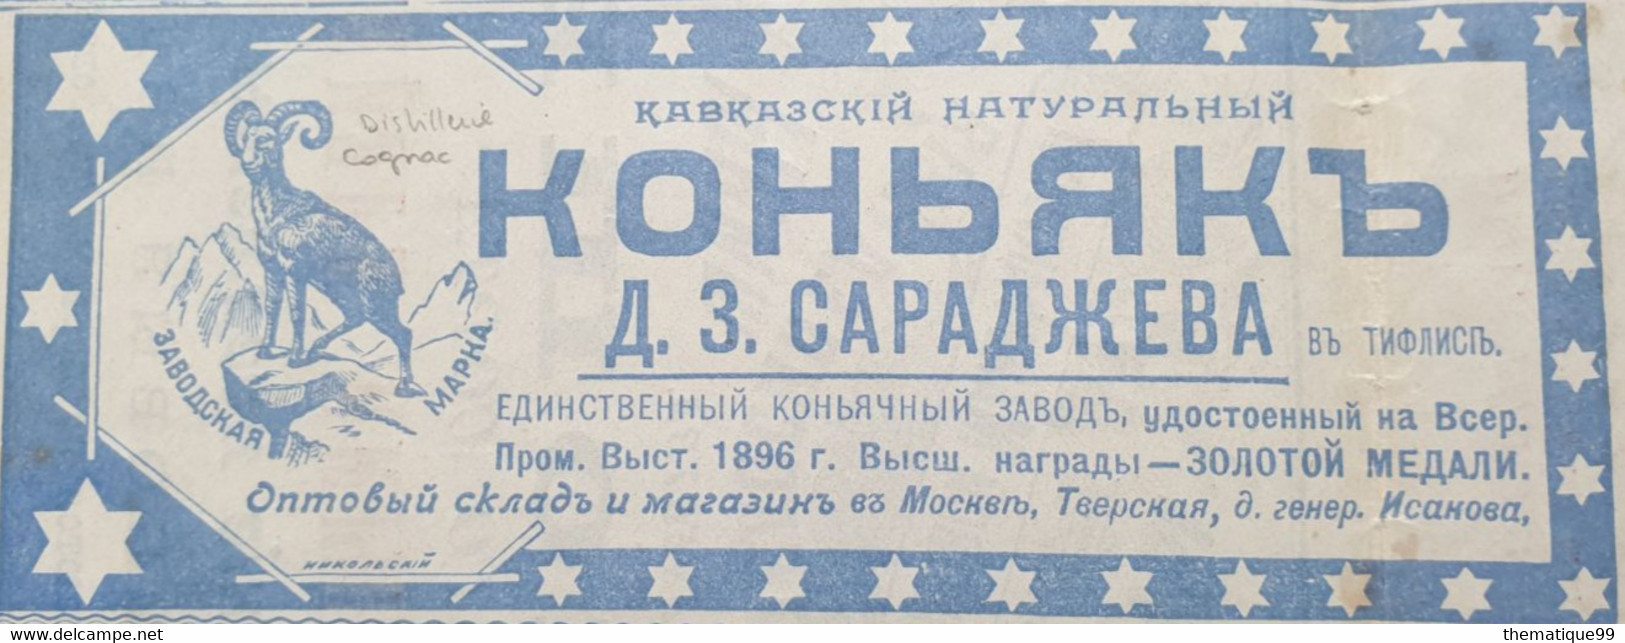 Entier de Russie 1899 avec publicités illustrées vélo piano ours coffre bouquetin